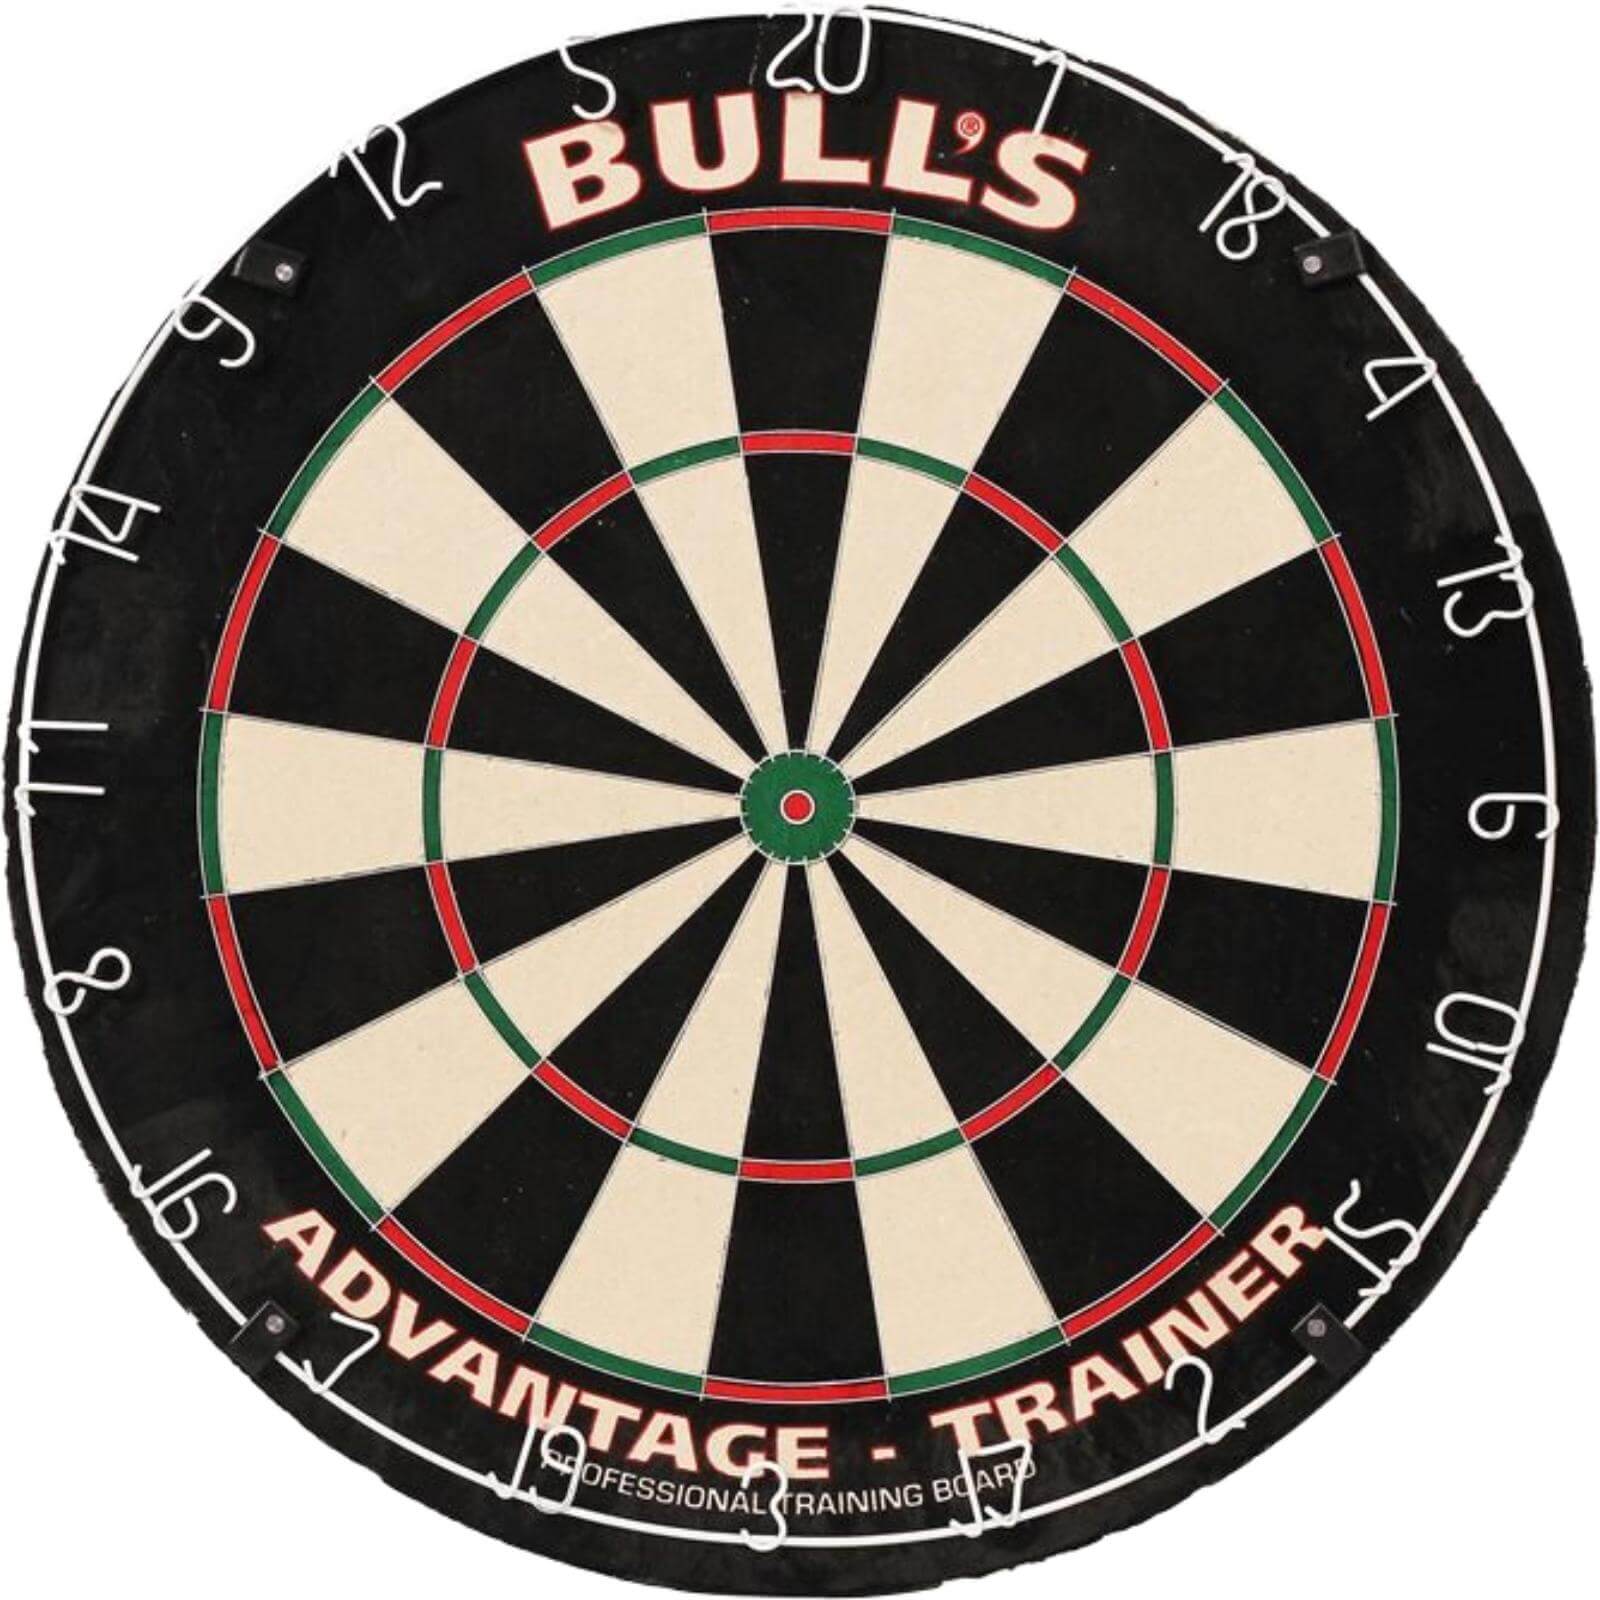 Dartboards - Bull's NL - Advantage Trainer Dartboard - Thinner Doubles & Trebles 